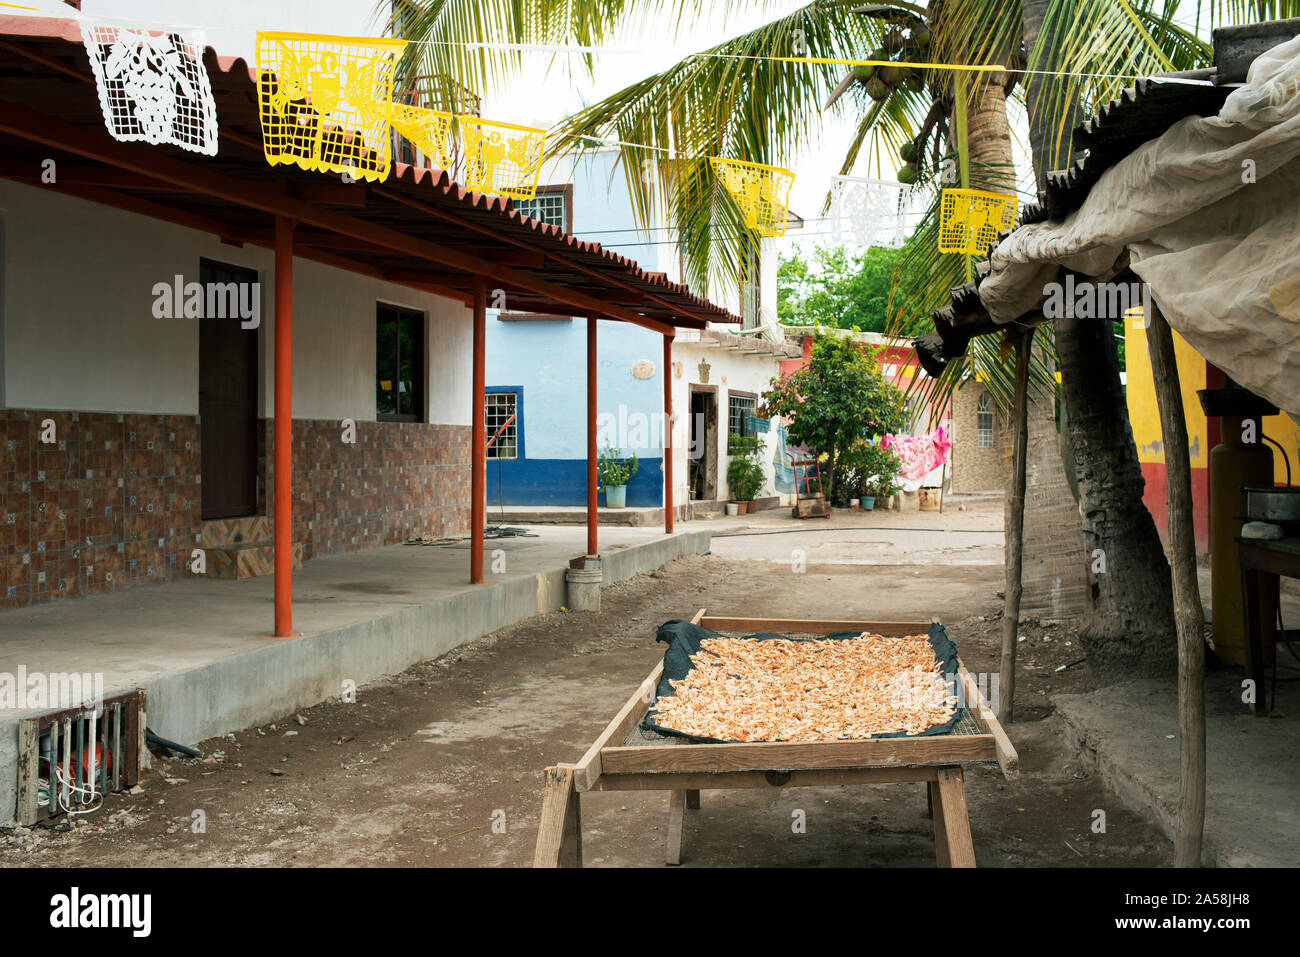 Garnelen (camarones) trocknen auf den Straßen von Mexcaltitán, Nayarit, Mexiko. Garnelen und Fischen sind die wichtigste Branche des kleinen Dorfes - Insel. Jun 2019 Stockfoto